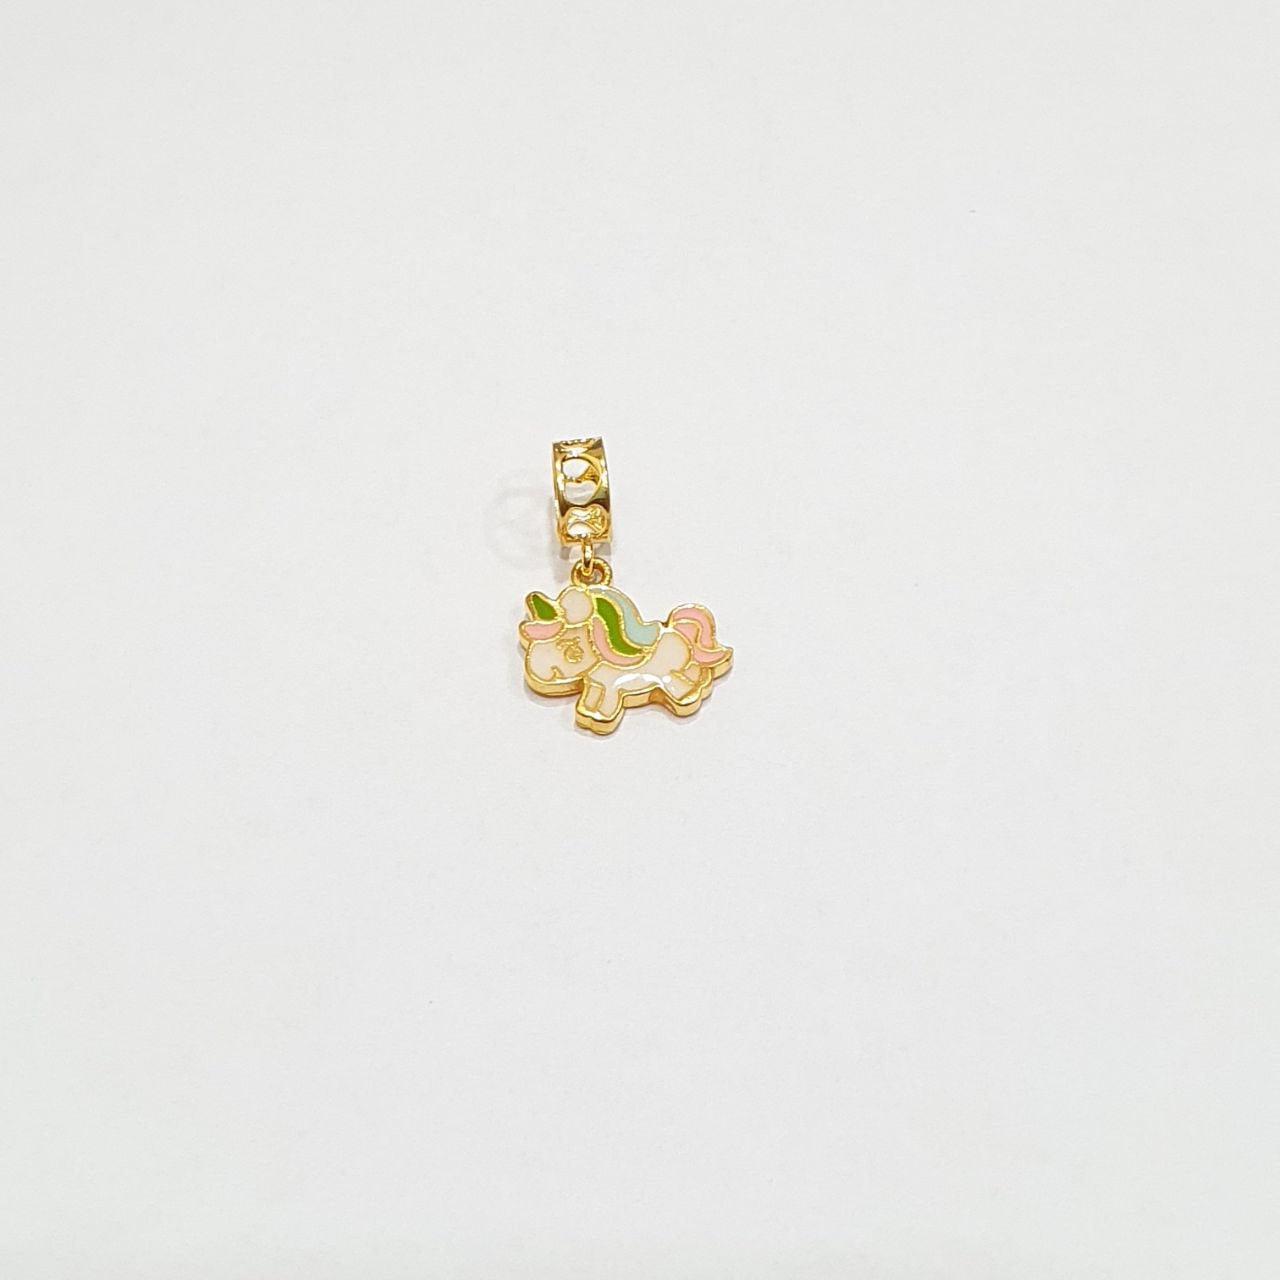 22k / 916 Gold Unicorn Charm-Charms & Pendants-Best Gold Shop